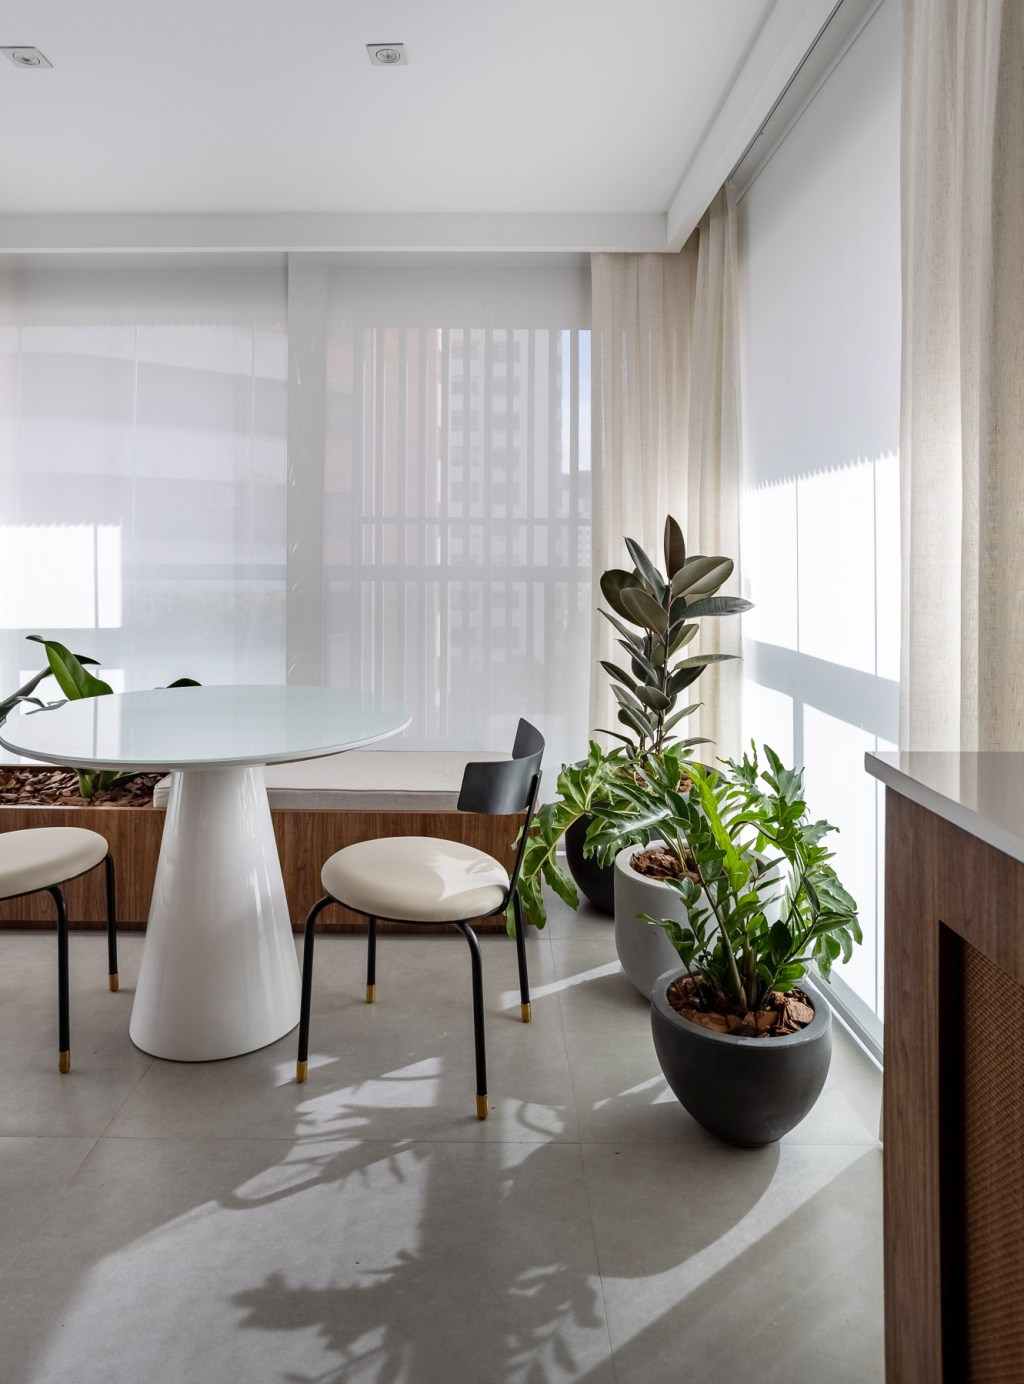 Wabi-sabi norteia a decoração de apartamento de apenas 48 m². Projeto de Carolina Gava. Na foto, sala de jantar com banco e plantas.